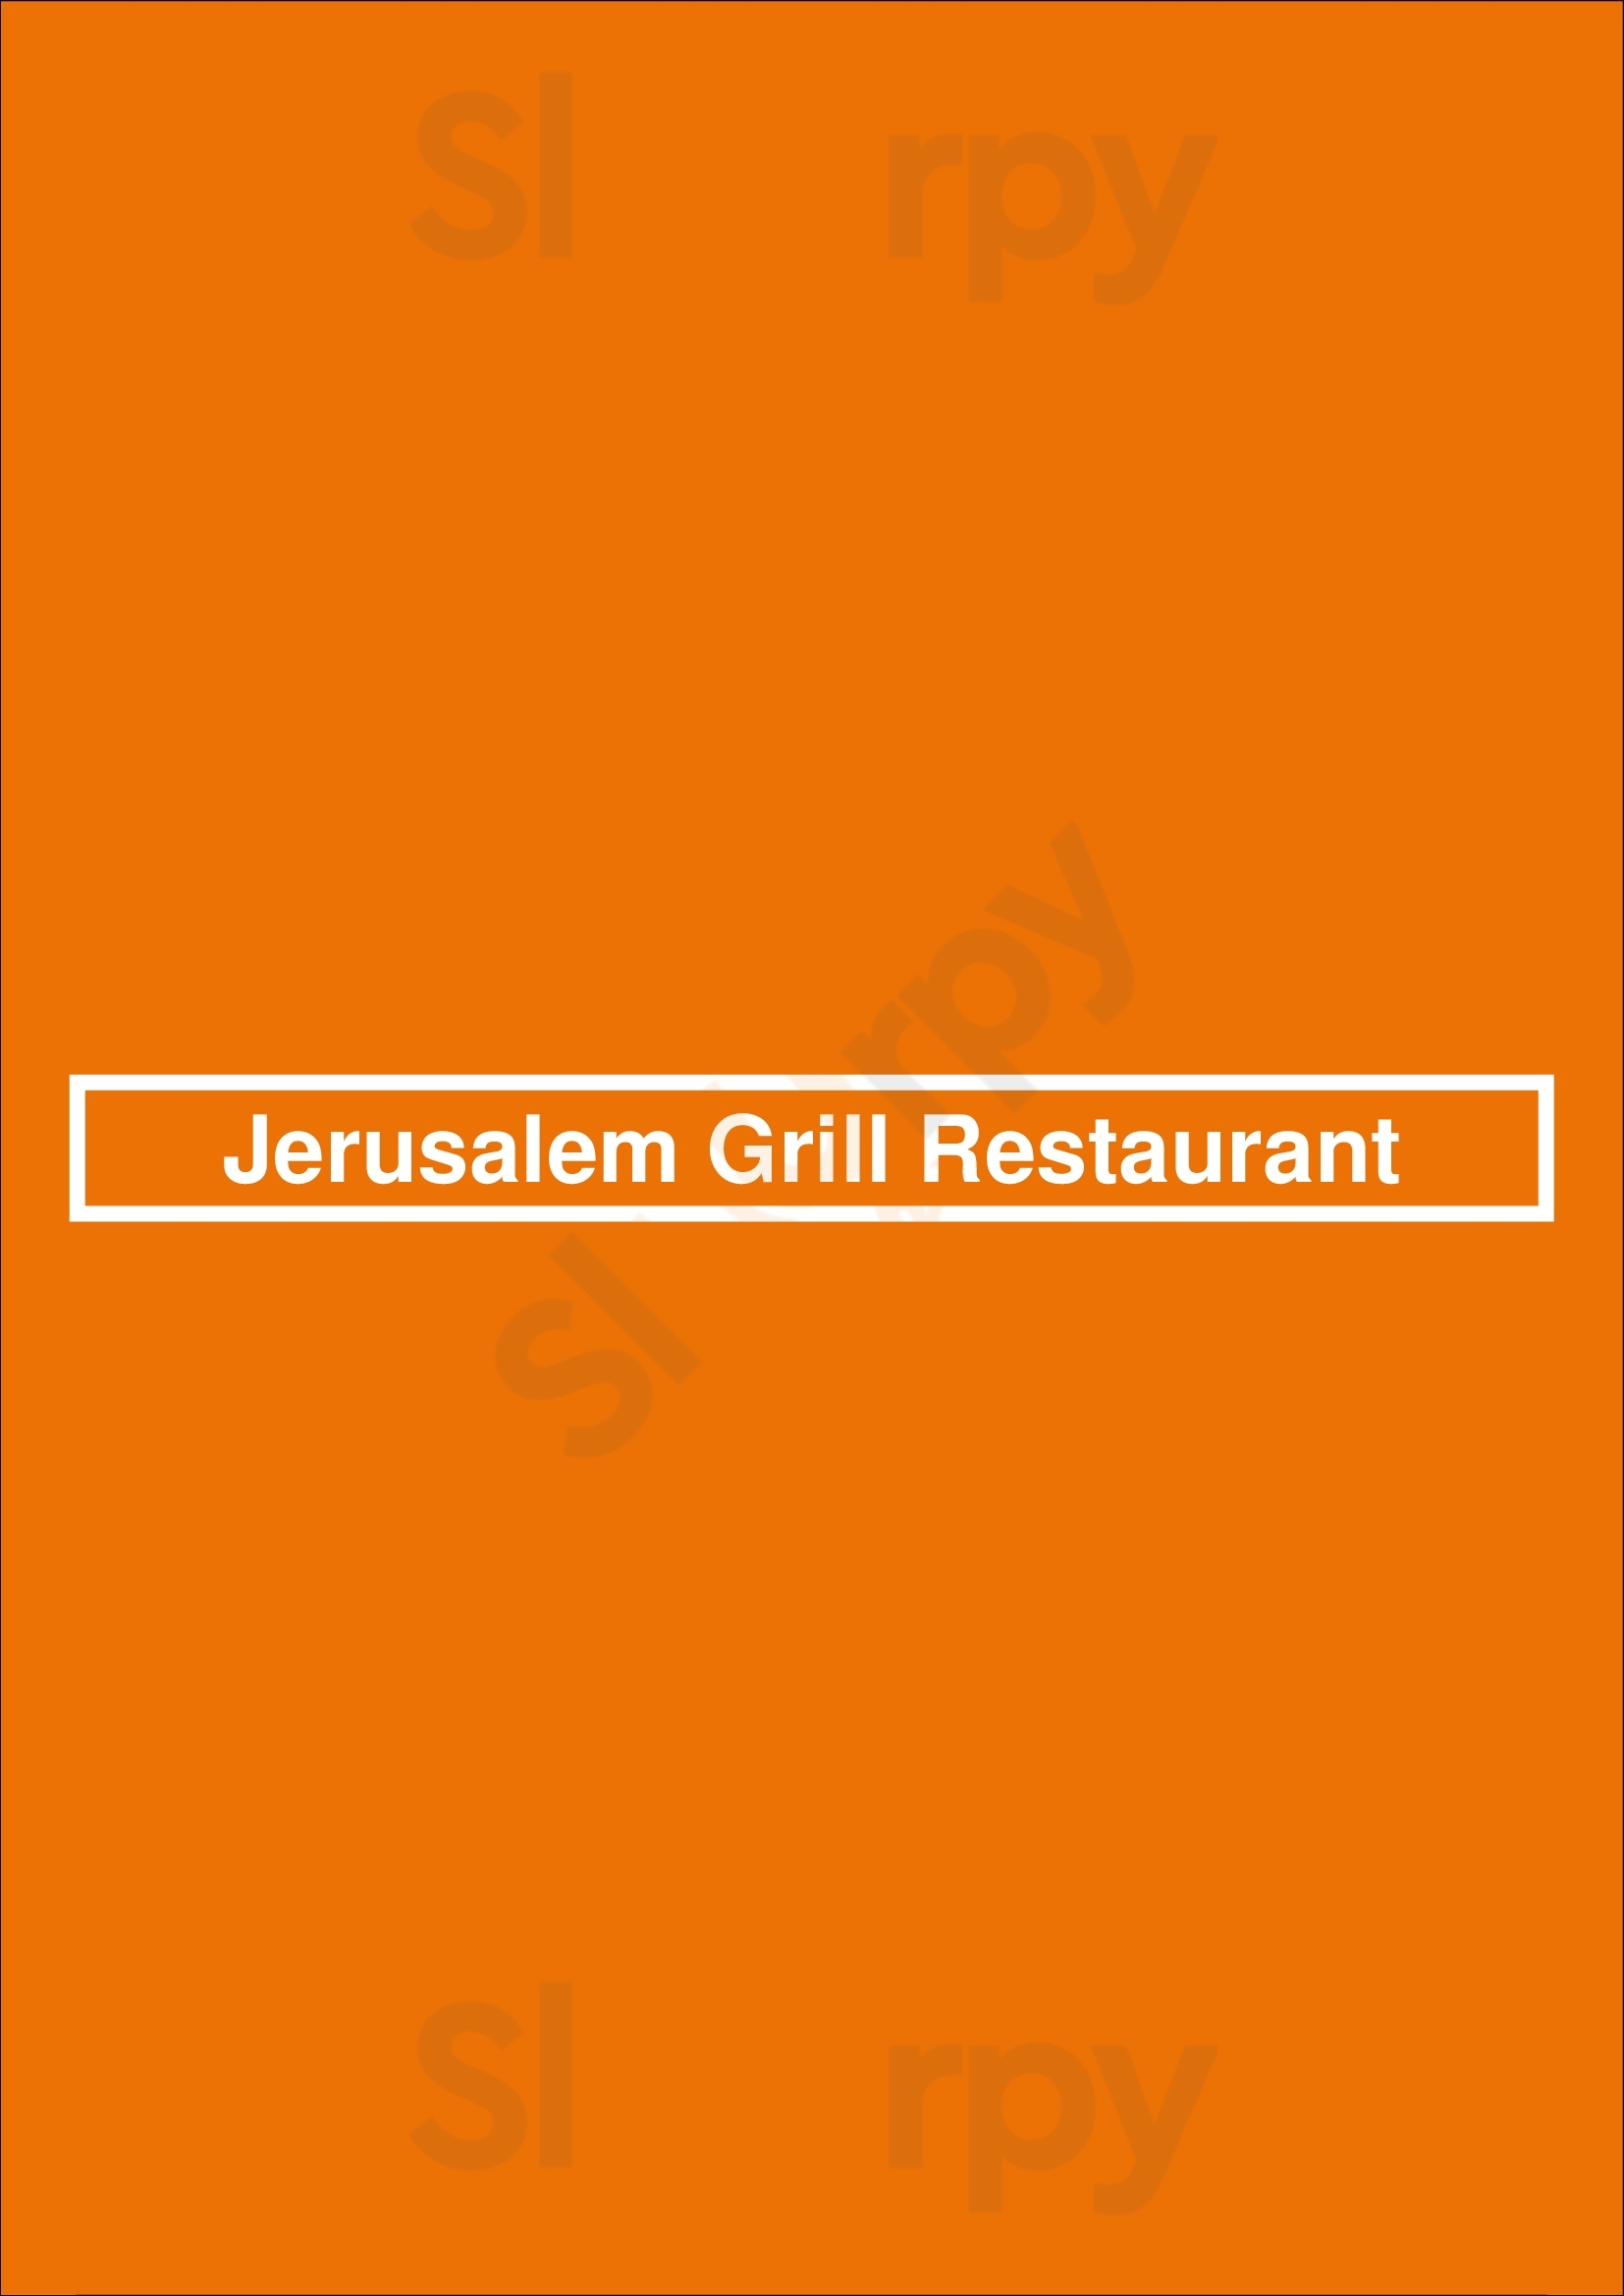 Jerusalem Grill Restaurant San Antonio Menu - 1